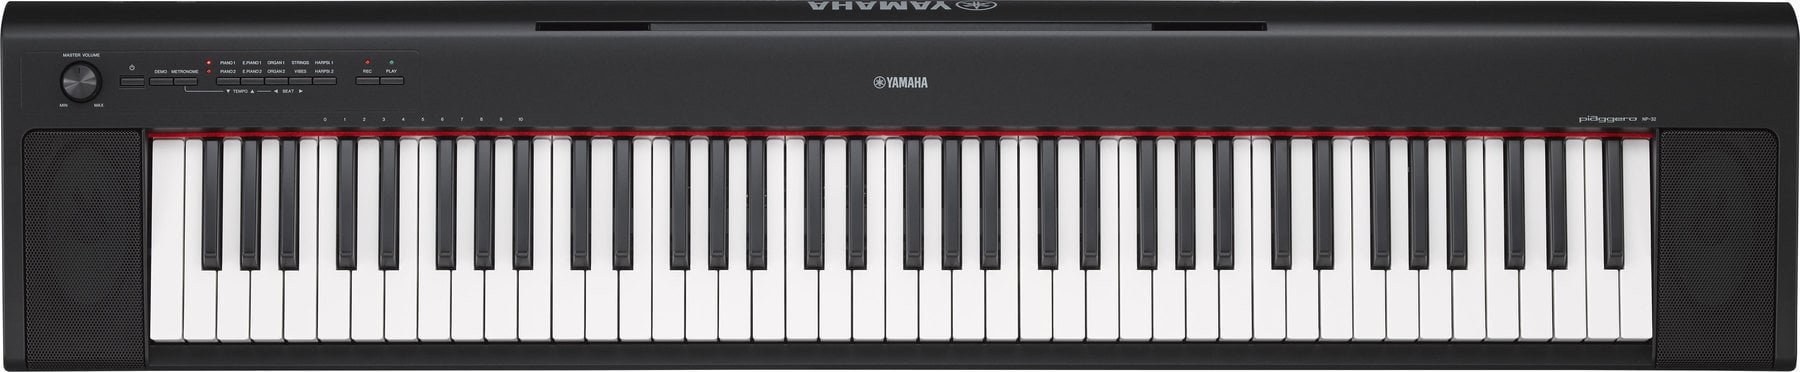 Digitalt scen piano Yamaha NP-32 B Digitalt scen piano